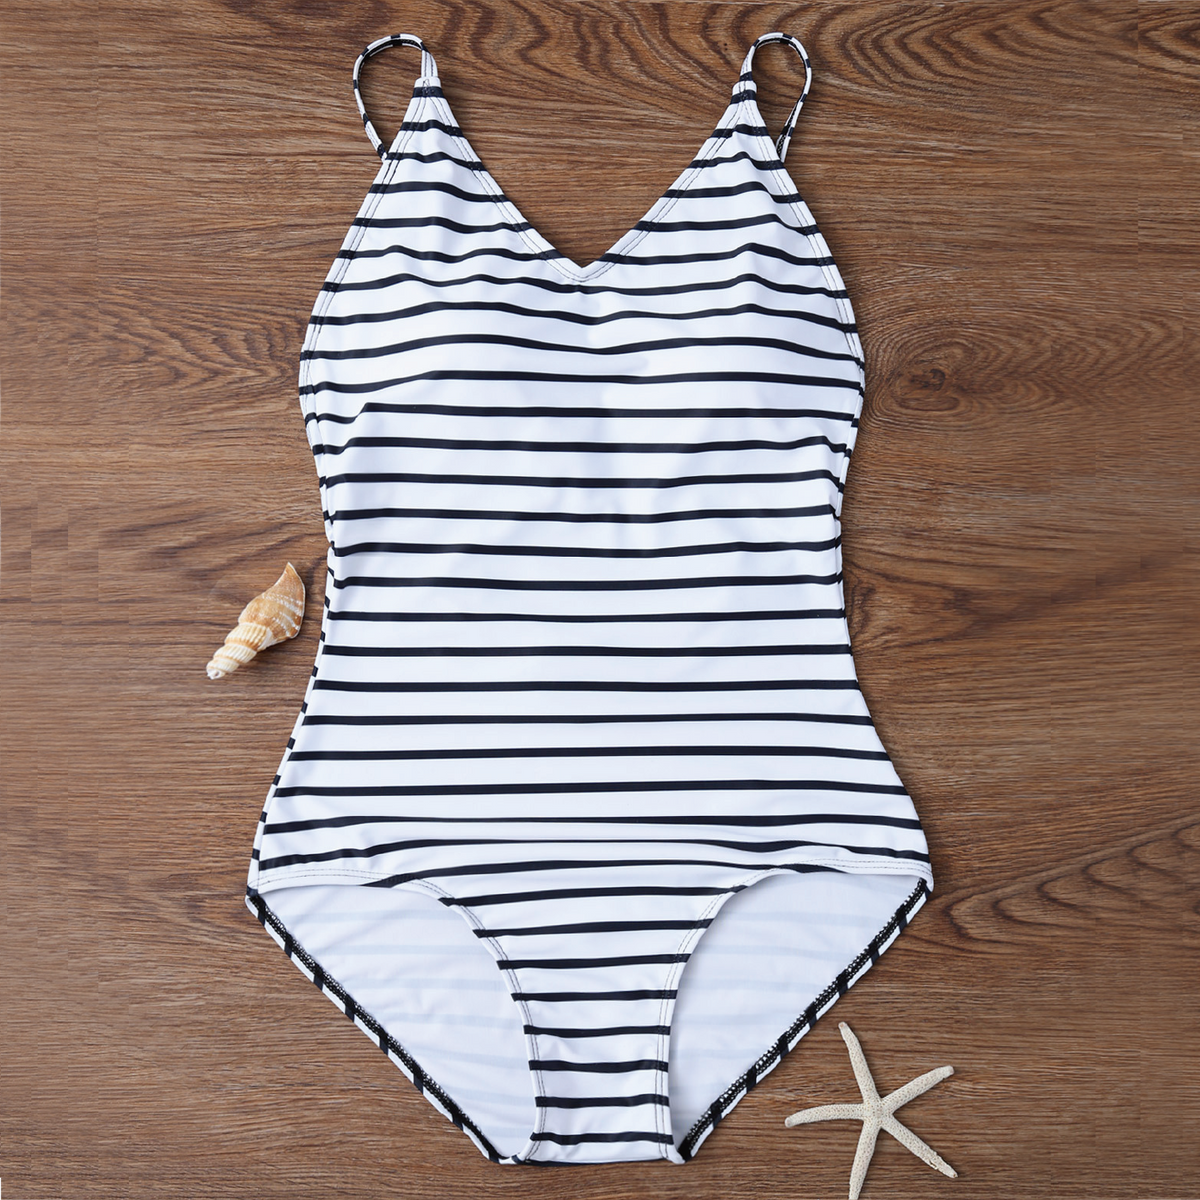 Modest One Piece Swimwear - Buy Black White Striped One Piece Swimsuit for  women – W.T.I. Design